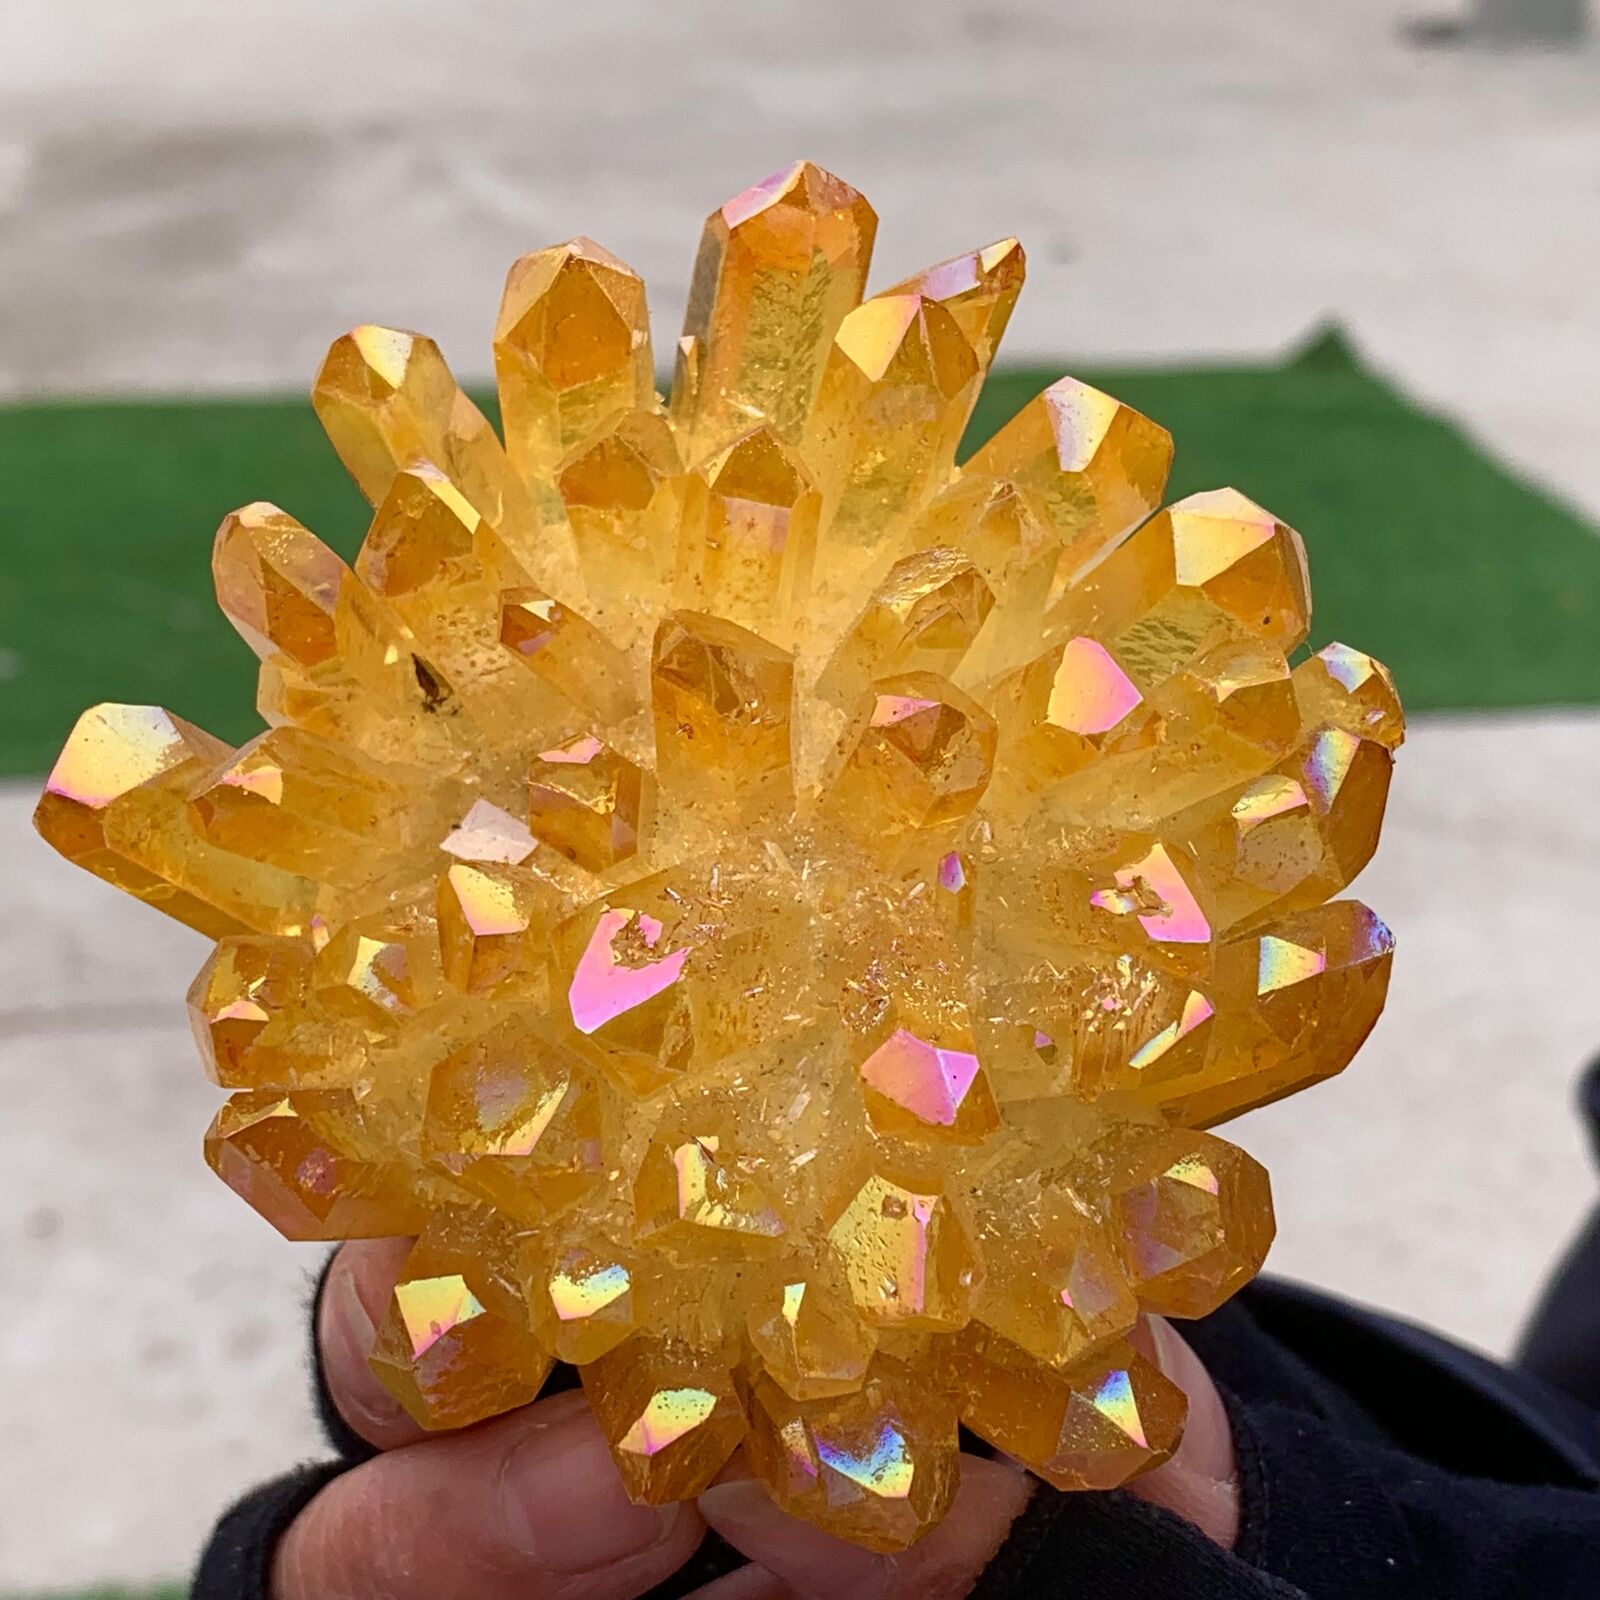 328G New Find Yellow PhantomQuartz Crystal Cluster MineralSpecimen